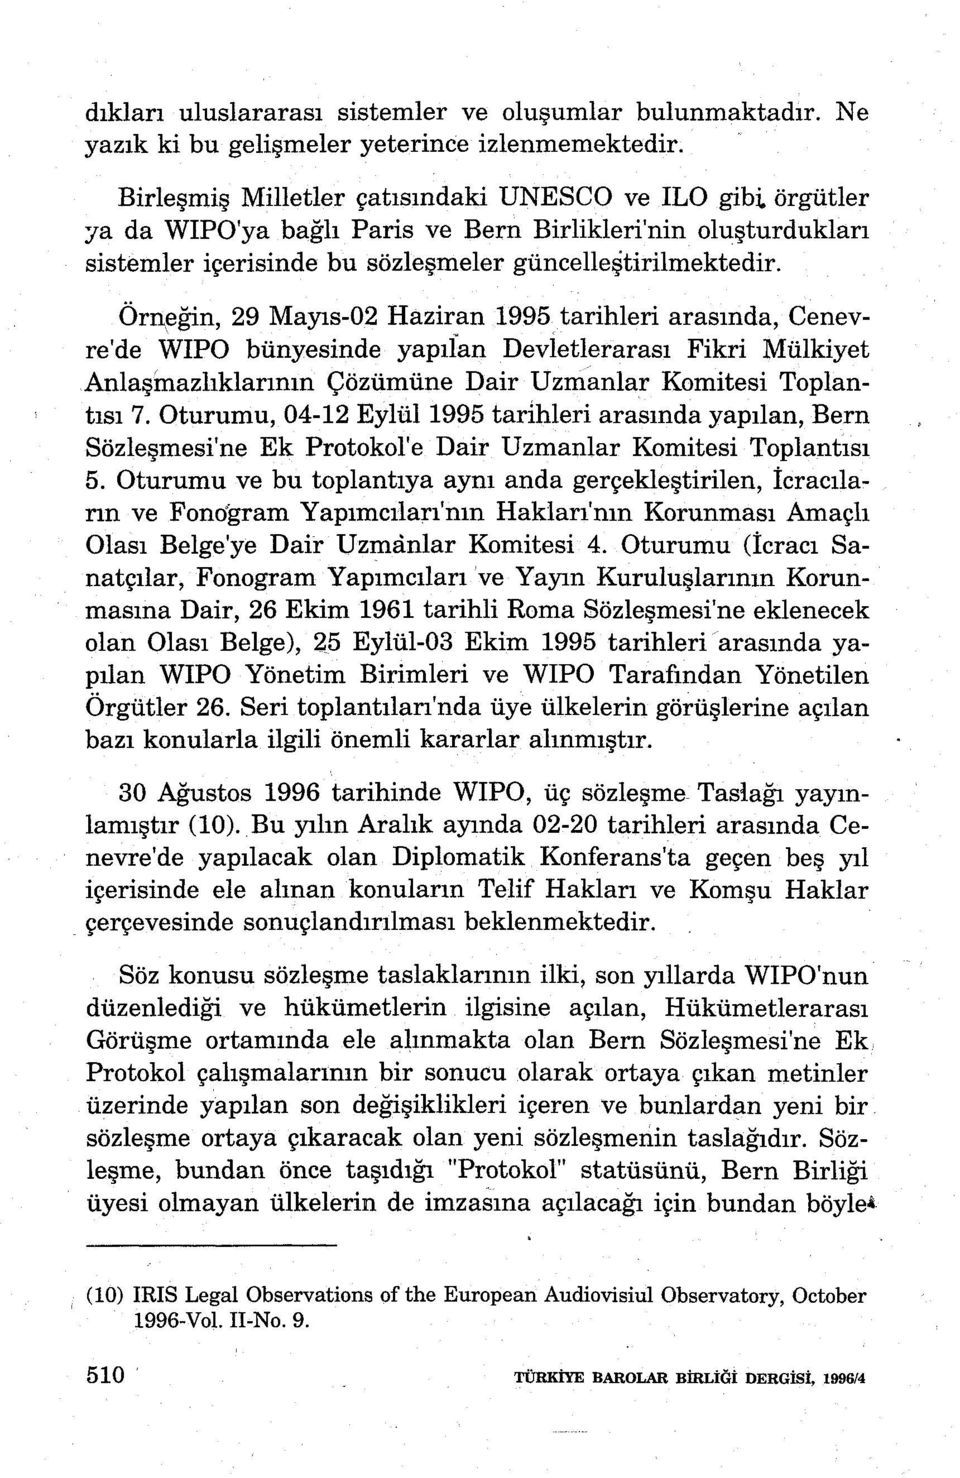 Örneğin, 29 Mayıs-02 Haziran 1995 tarihleri arasında, Cenevre'de WIPO bünyesinde yapıian Devietlerarası Fikri Mülkiyet Çözümüne Dair Uzmanlar Komitesi Toplantısı 7. Oturumu, 04-12 Eylül 1995 tarl.